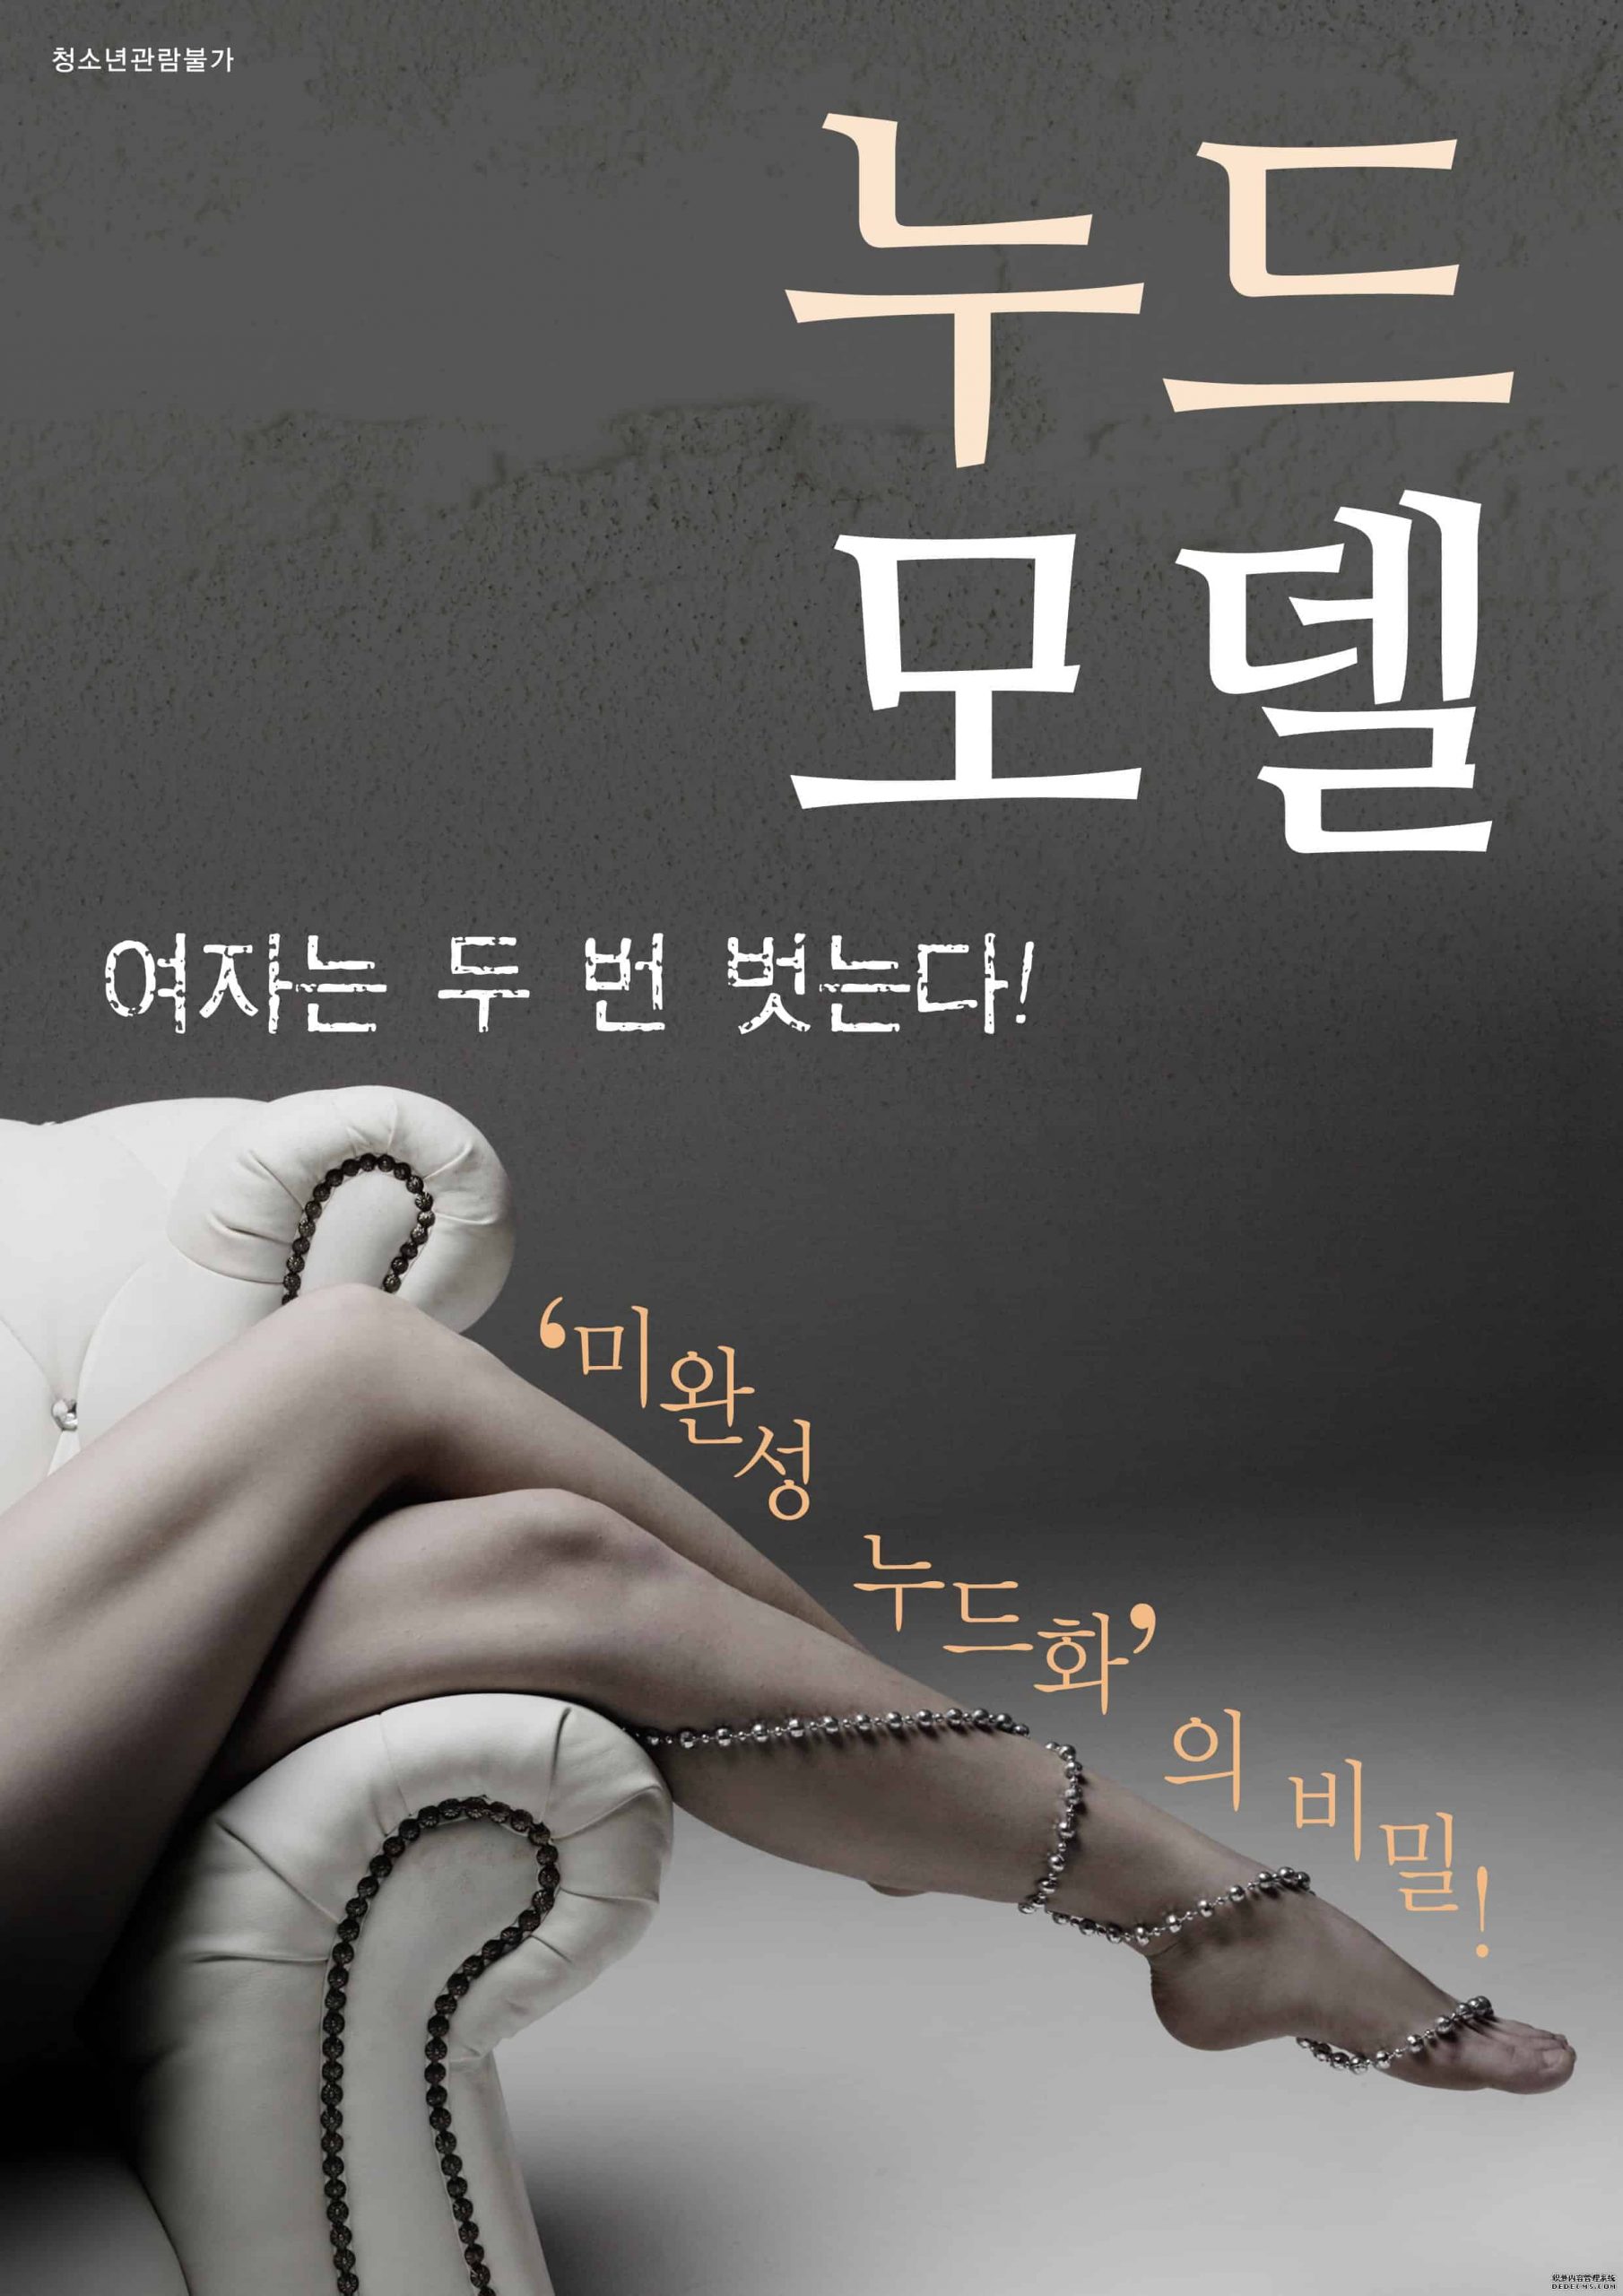 ดูหนังโป๊ออนไลน์ฟรี Nude Model เกาหลี18+